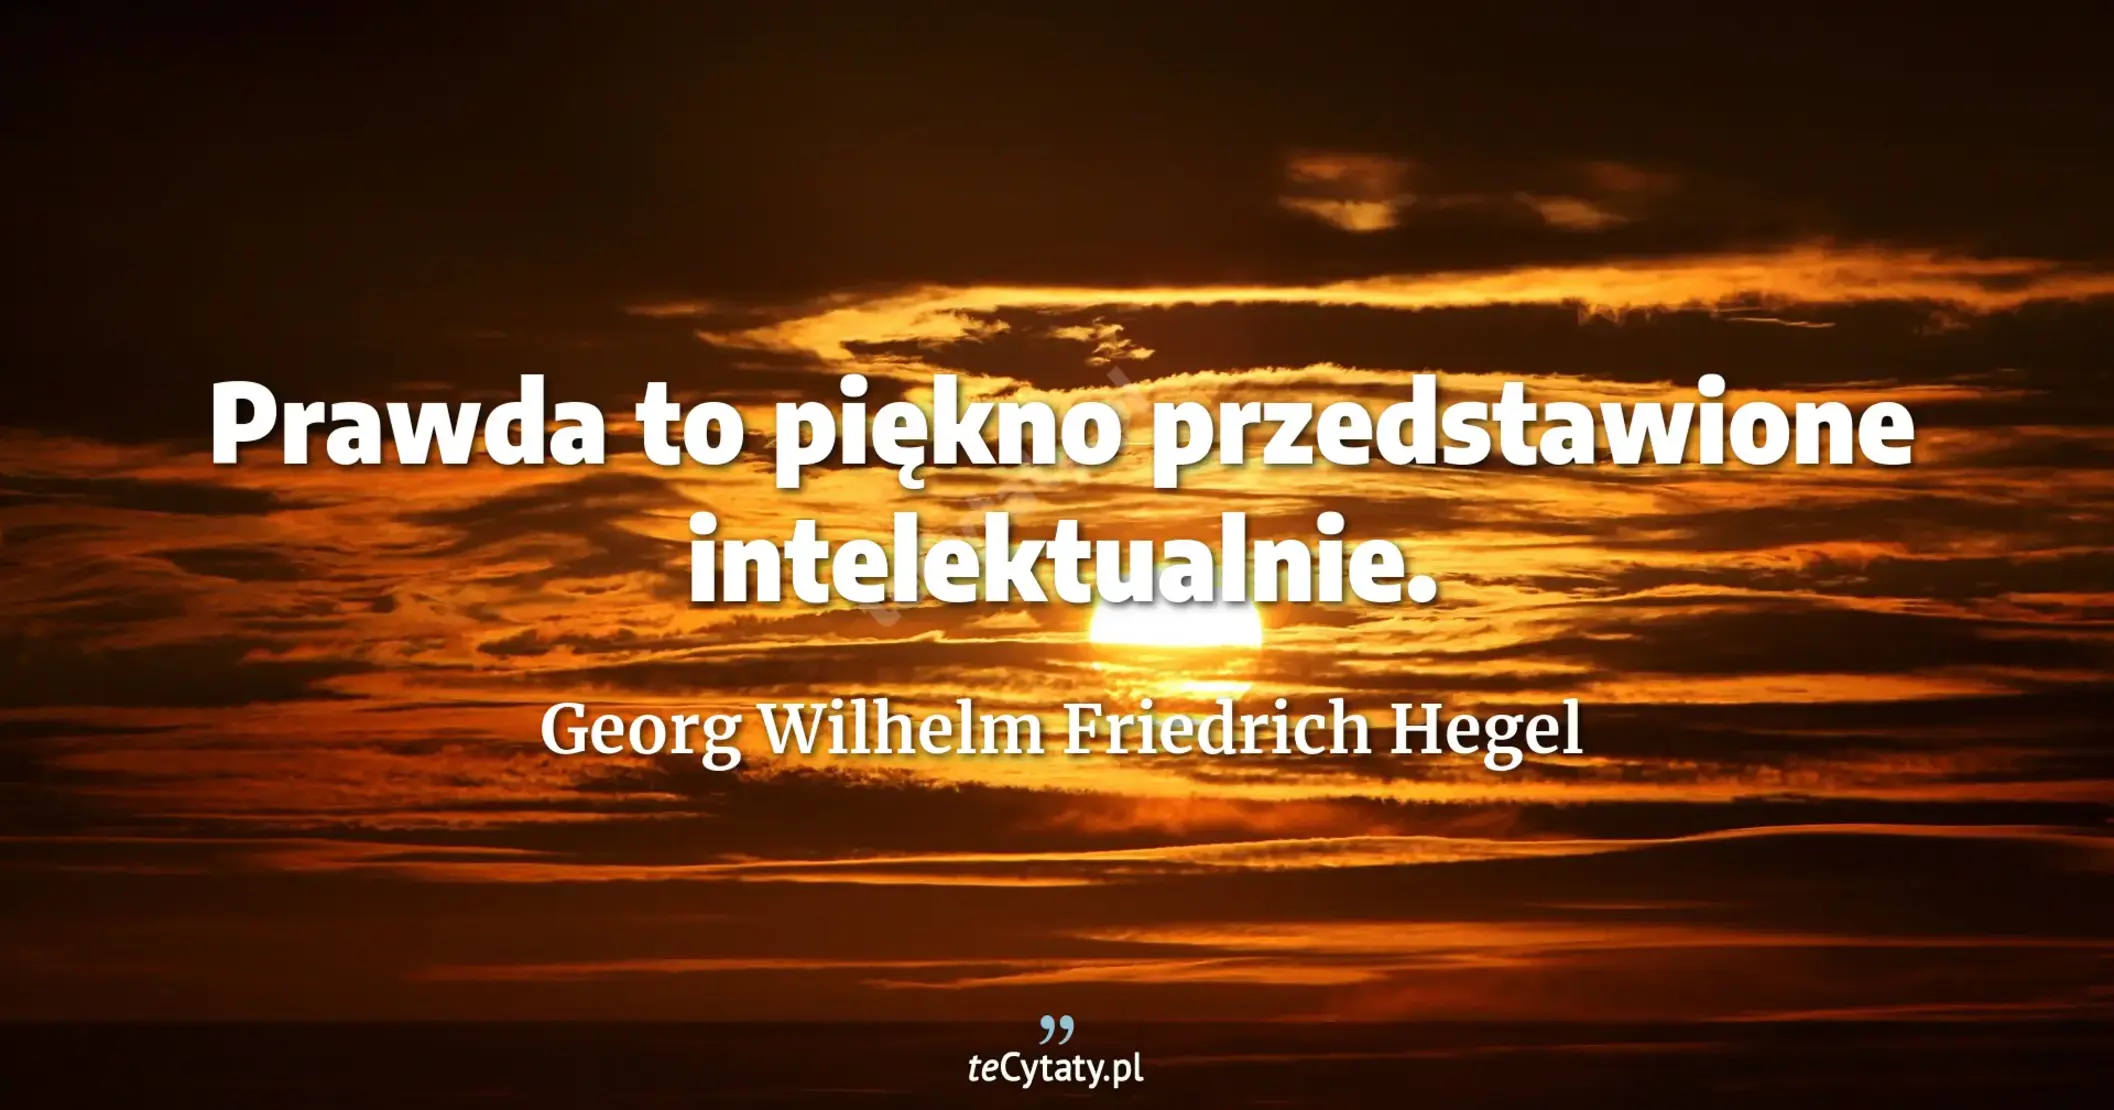 Prawda to piękno przedstawione intelektualnie. - Georg Wilhelm Friedrich Hegel